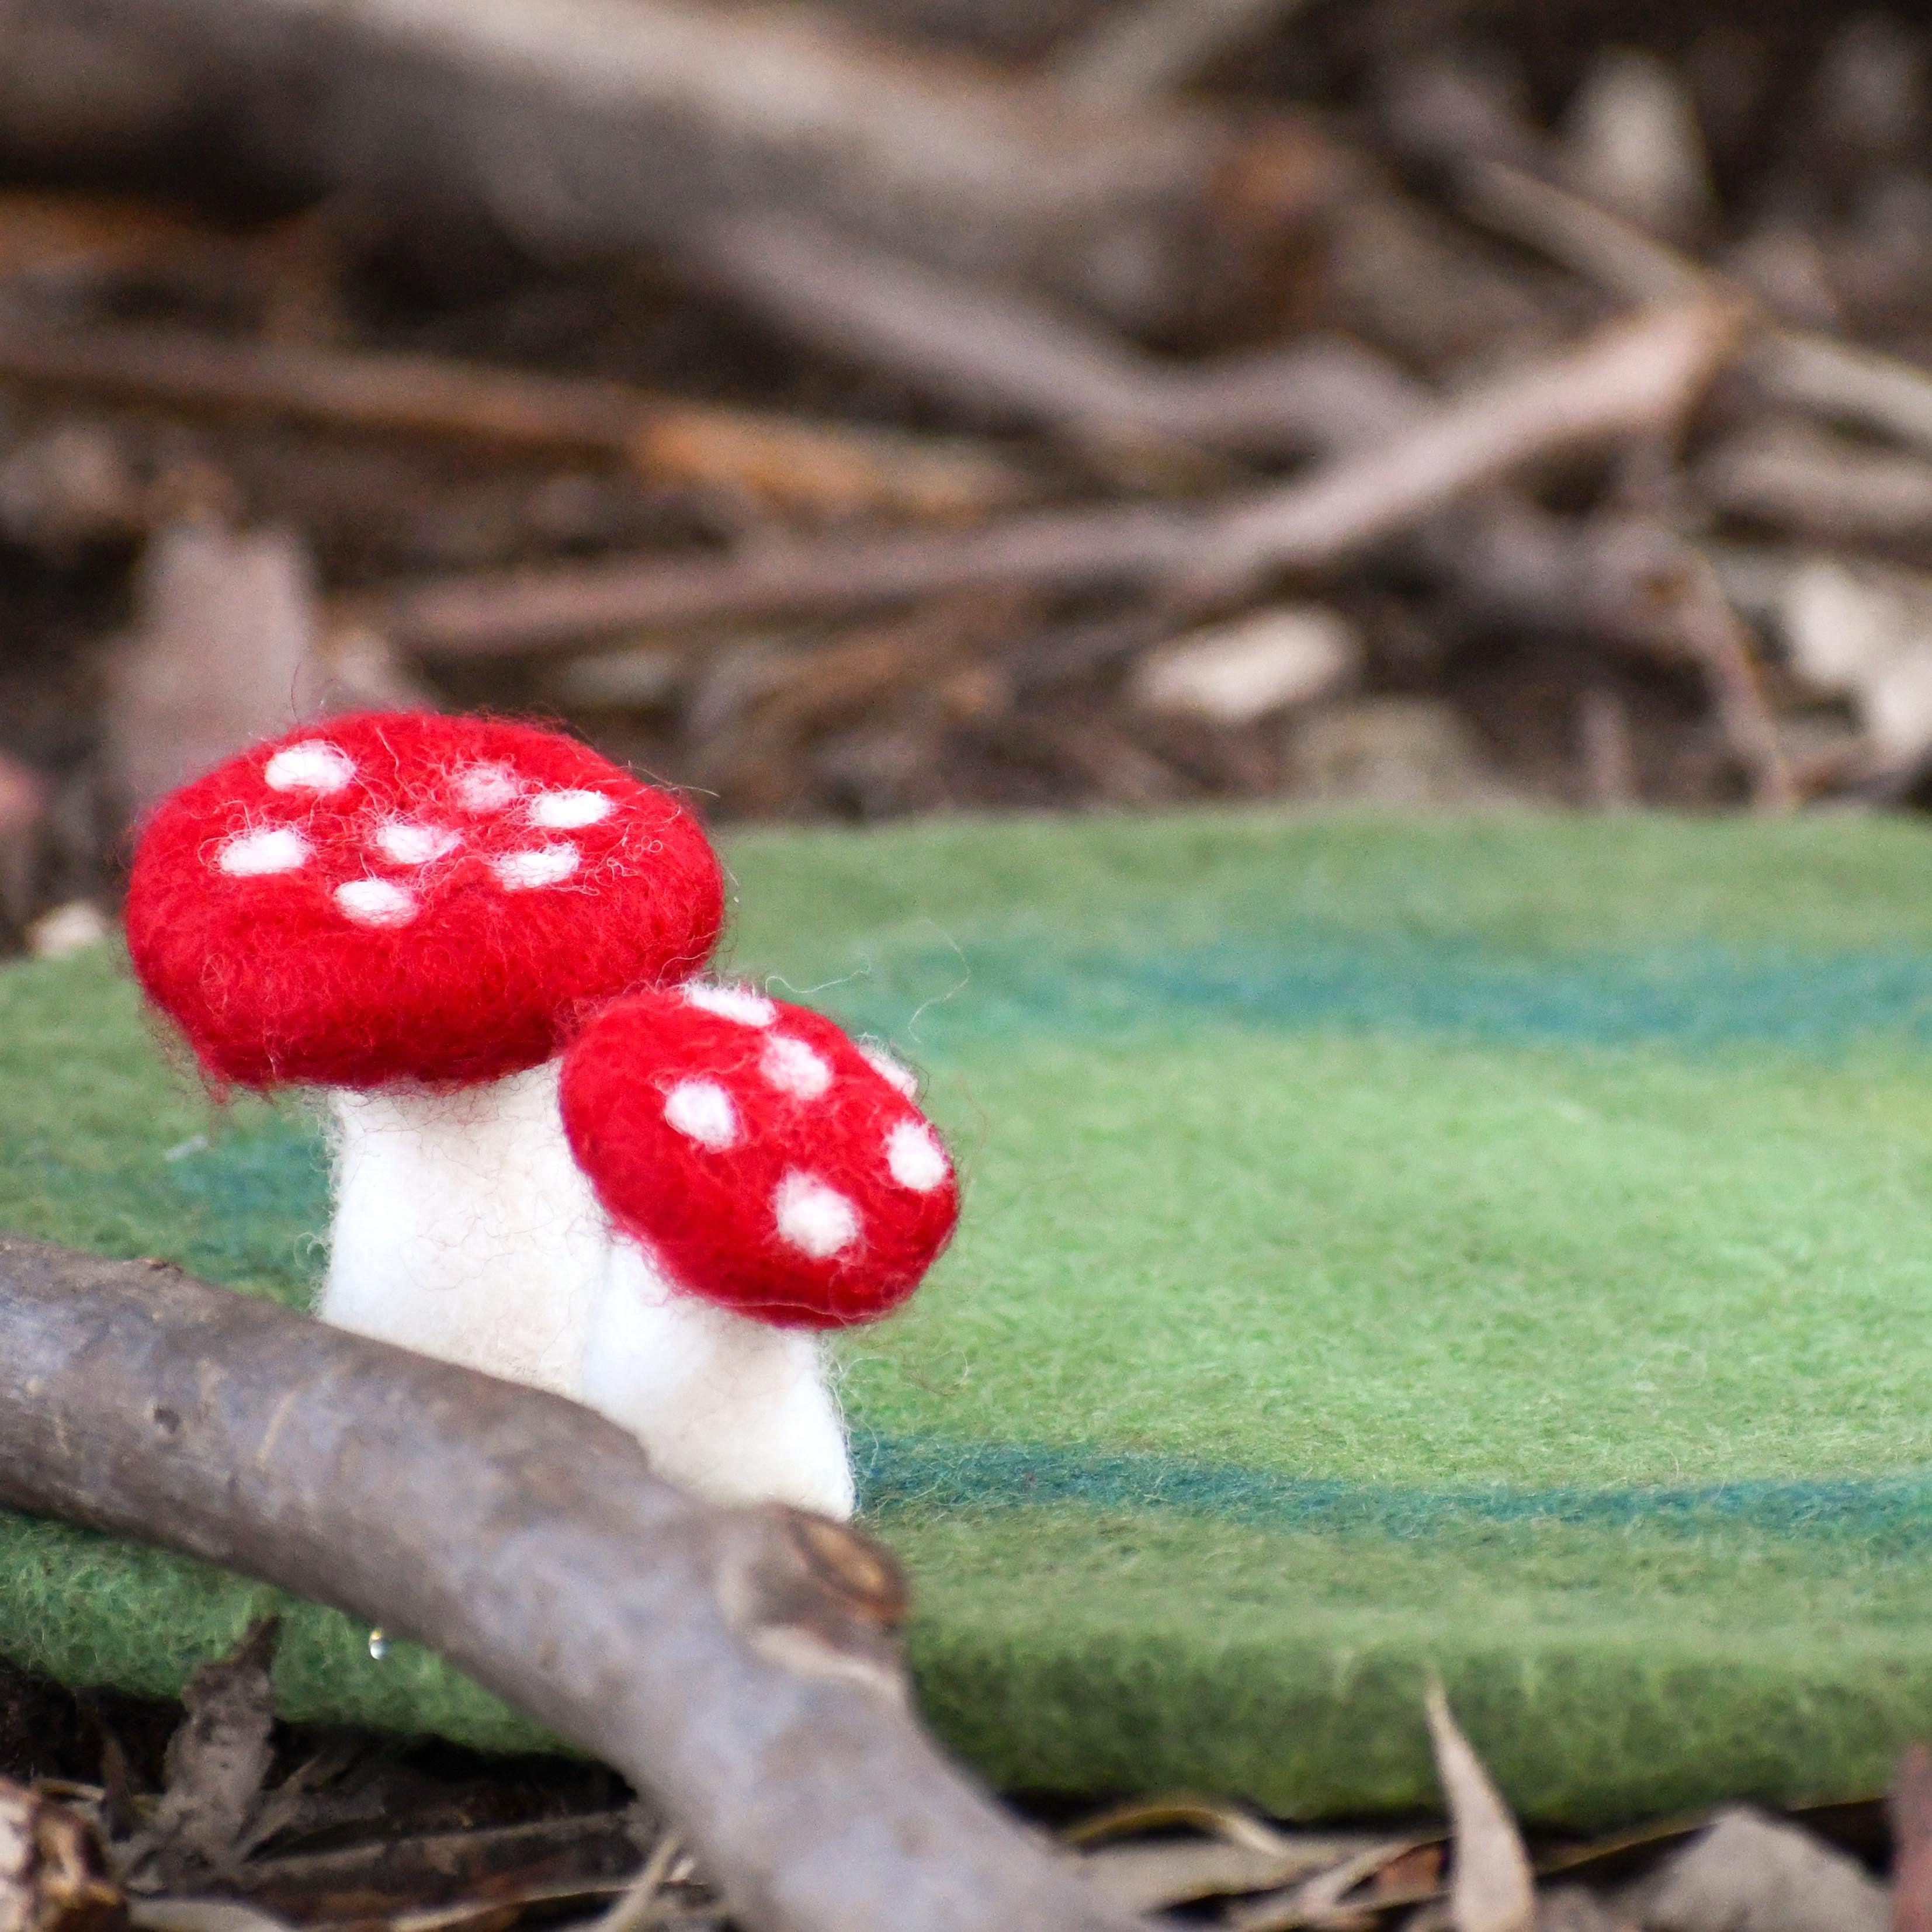 Toadstool Mushroom Play Mat Playscape - Tara Treasures